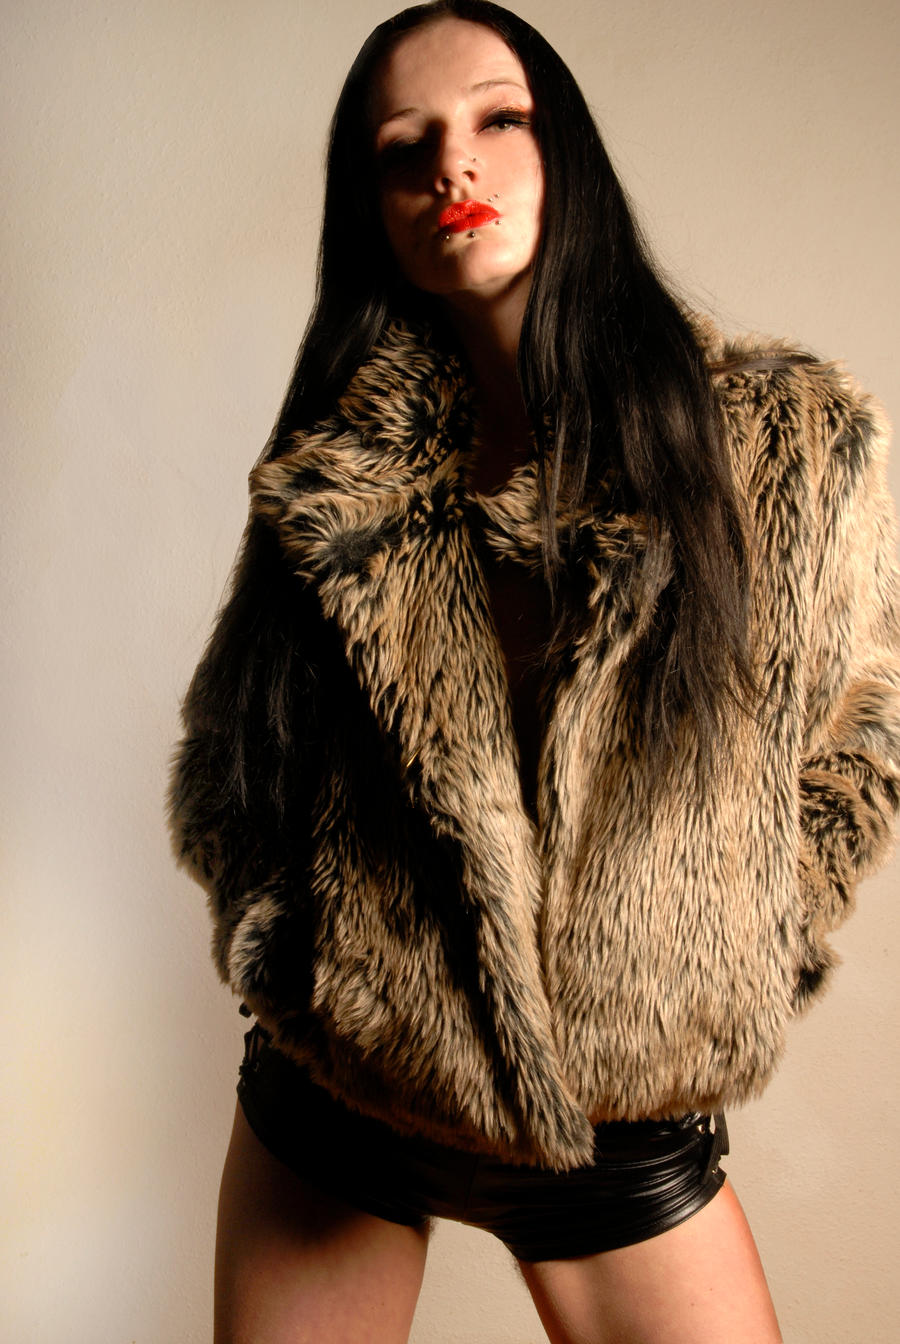 Lady in a fur coat III by Teufelin on DeviantArt